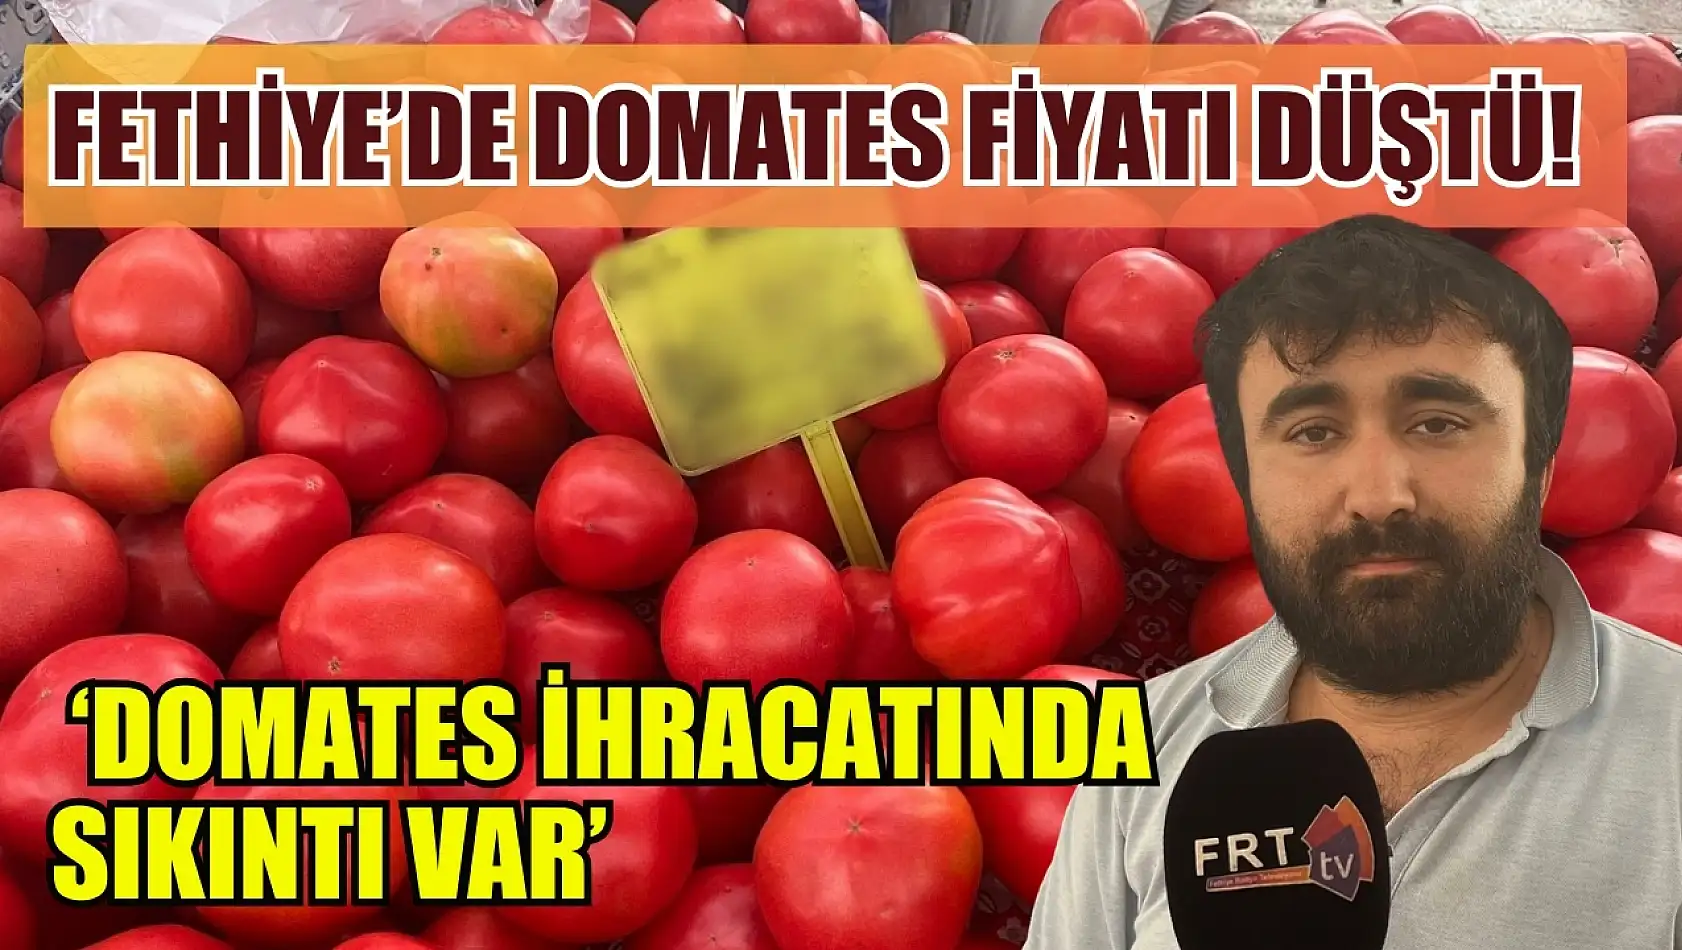 Fethiye'de domates fiyatı düştü! Ayat, 'Domates ihracatında sıkıntı var'